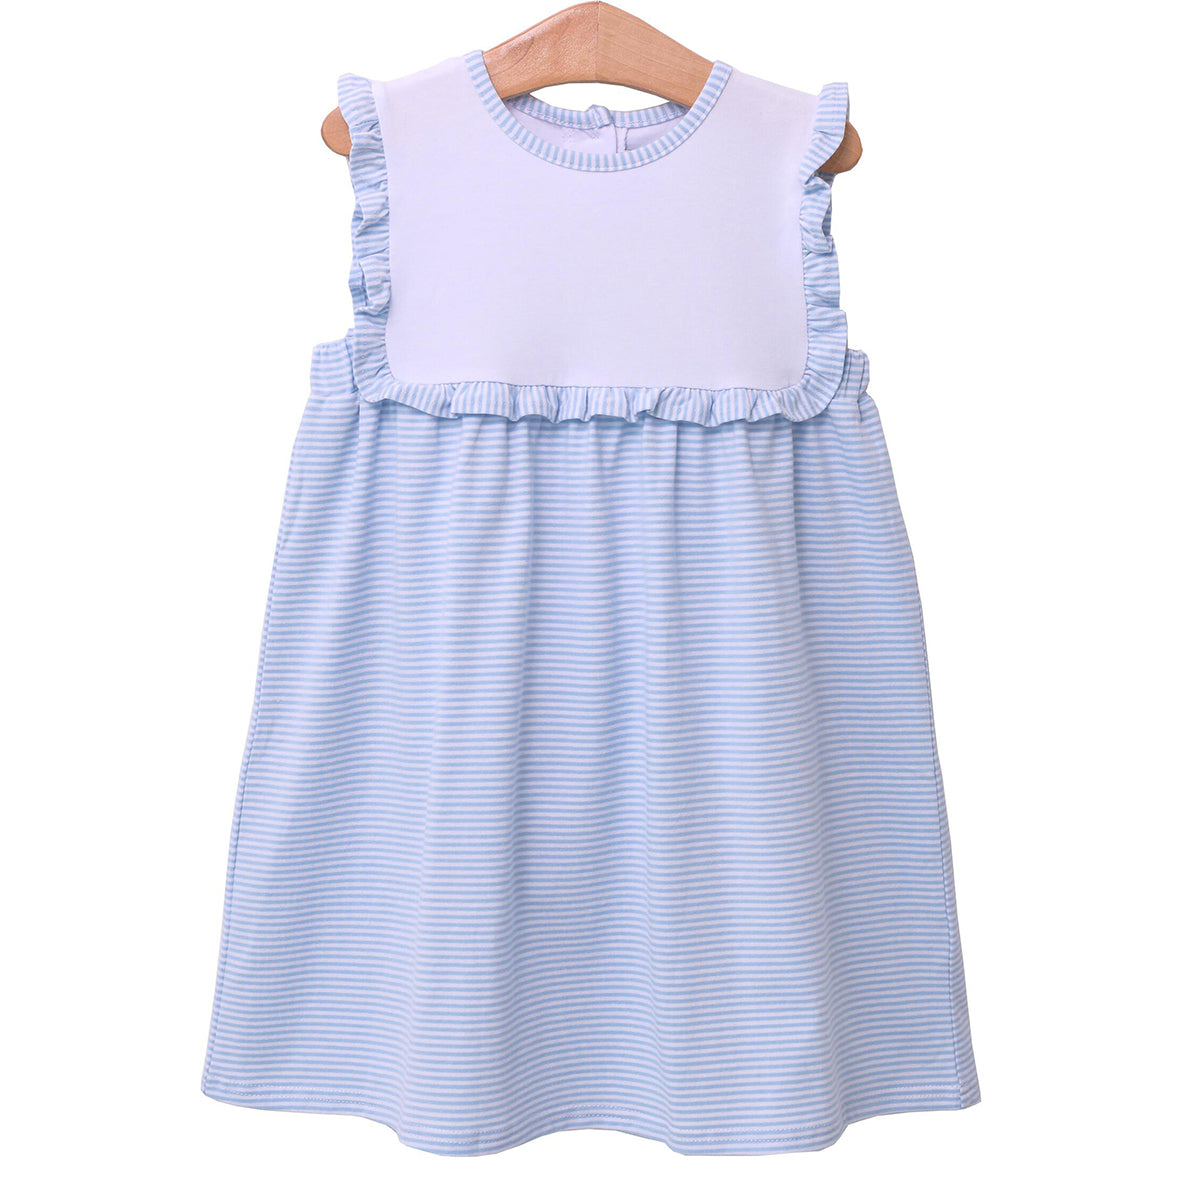 Toddler Girl's Light Blue Striped Alice Dress Trotter Street Kids